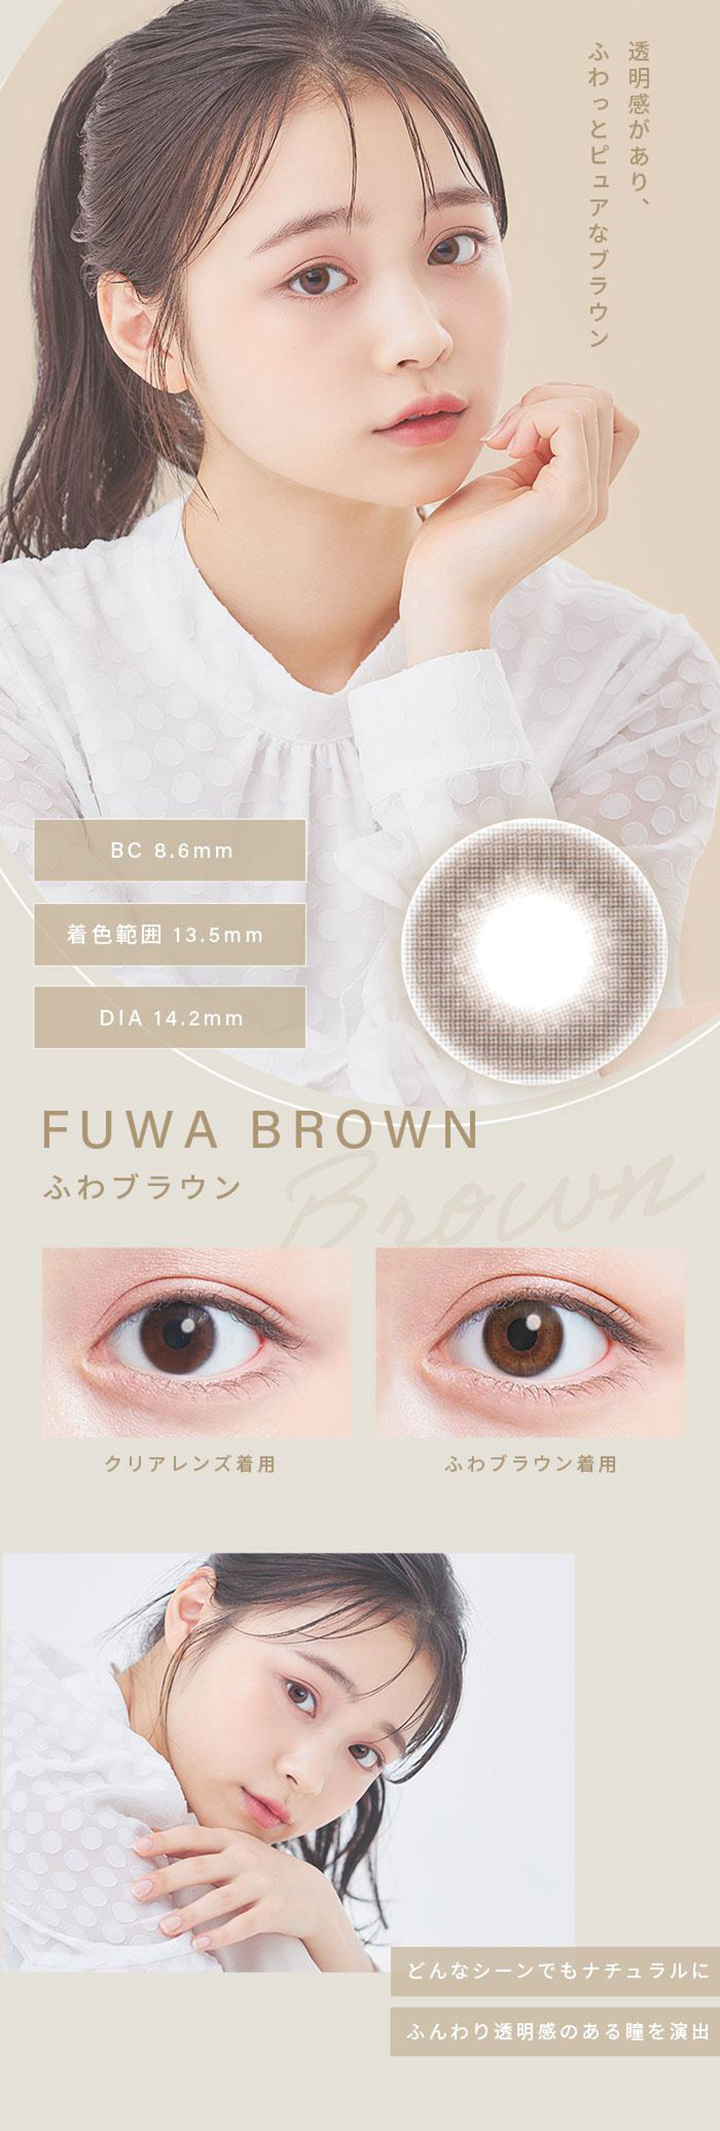 ふわブラウン(FUWA BROWN)